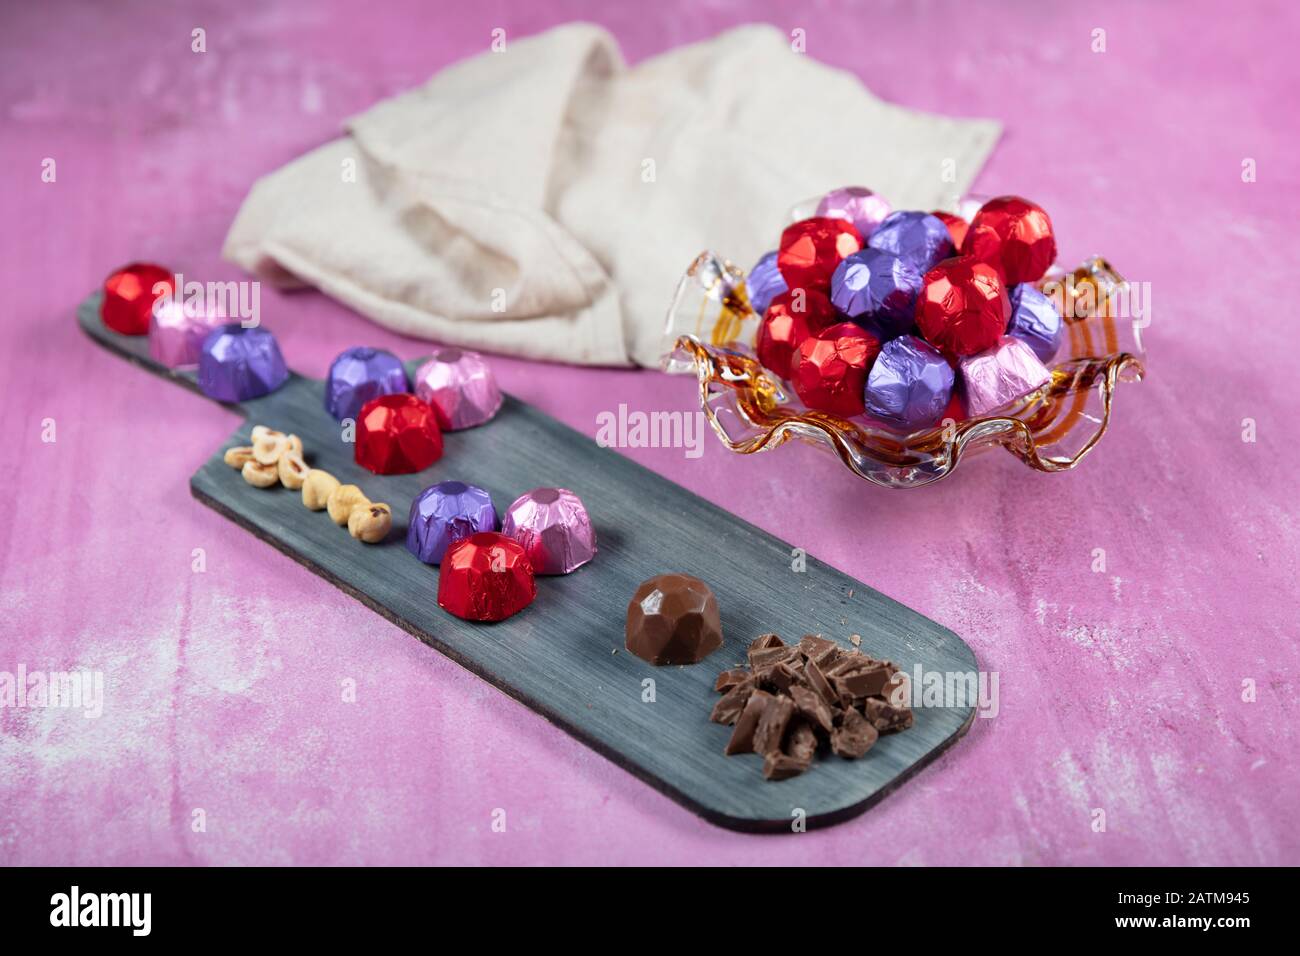 Cioccolato alla nocciola; cioccolato alla nocciola ricoperto di lamina rossa, viola e rosa su fondo lila di legno. EID al-Fitr (Festa del Ramadan) concetto. Foto Stock